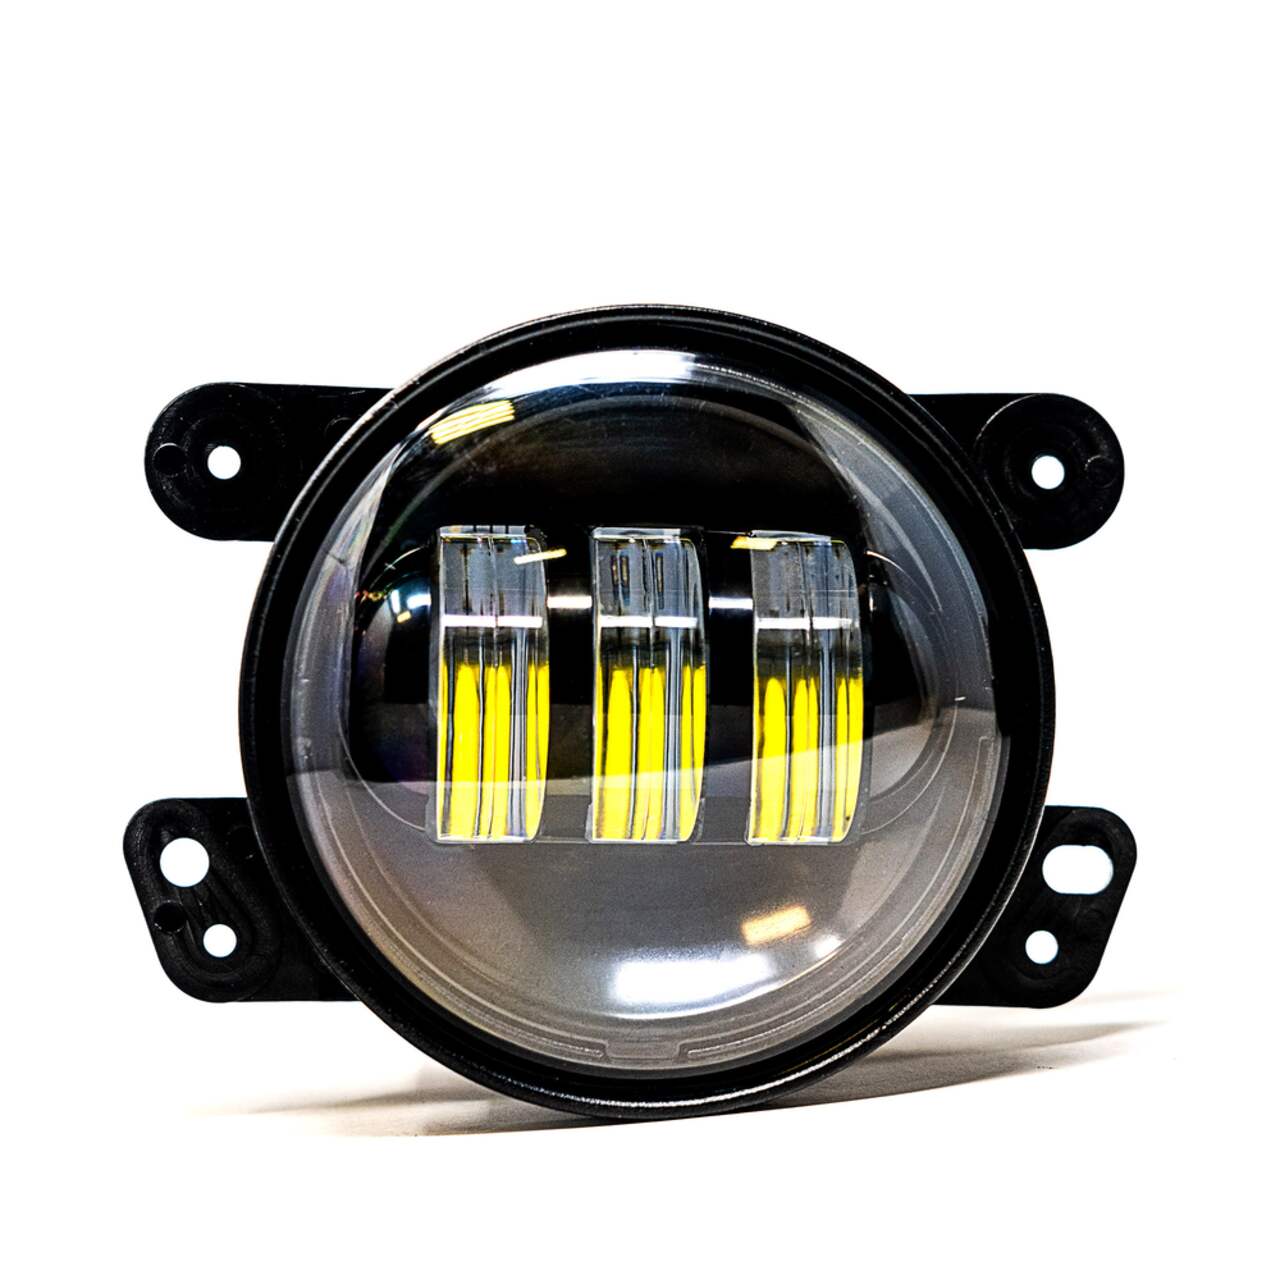 Alpena Fog Litz 3 12V LED Fog Light Bulbs, Waterproof & Shock